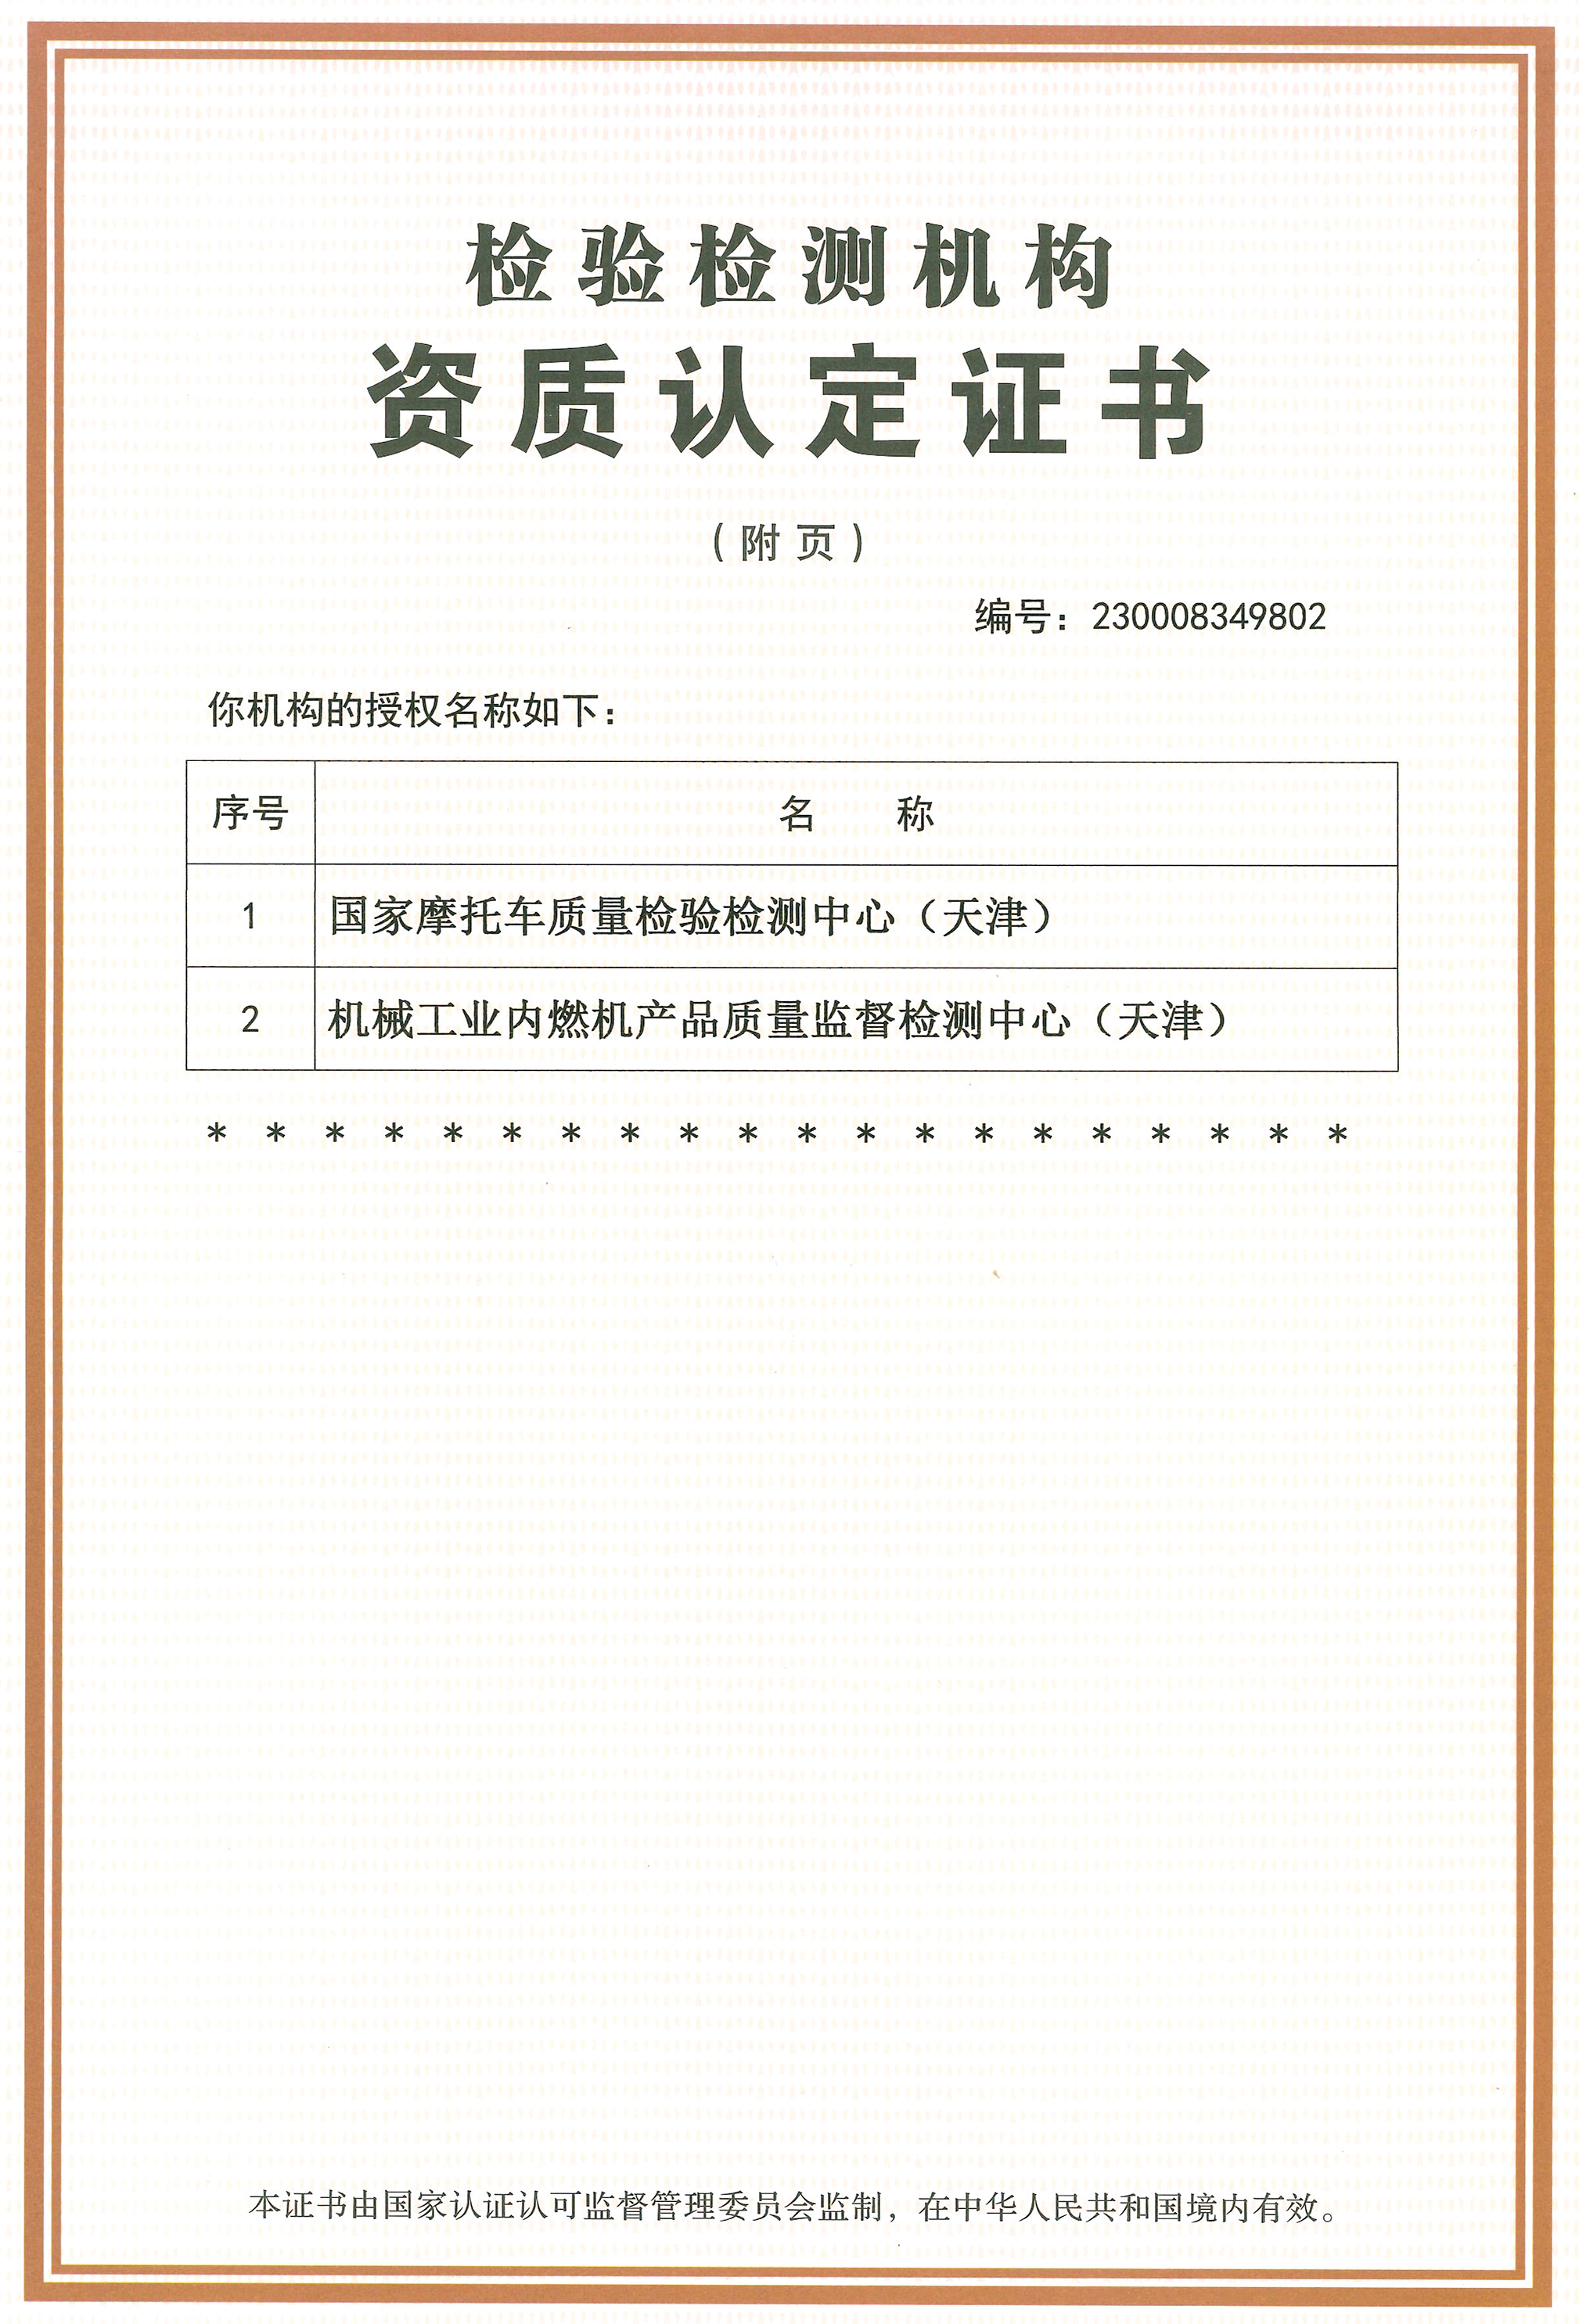 天津摩托车质量监督检验所资质认定证书（附页）